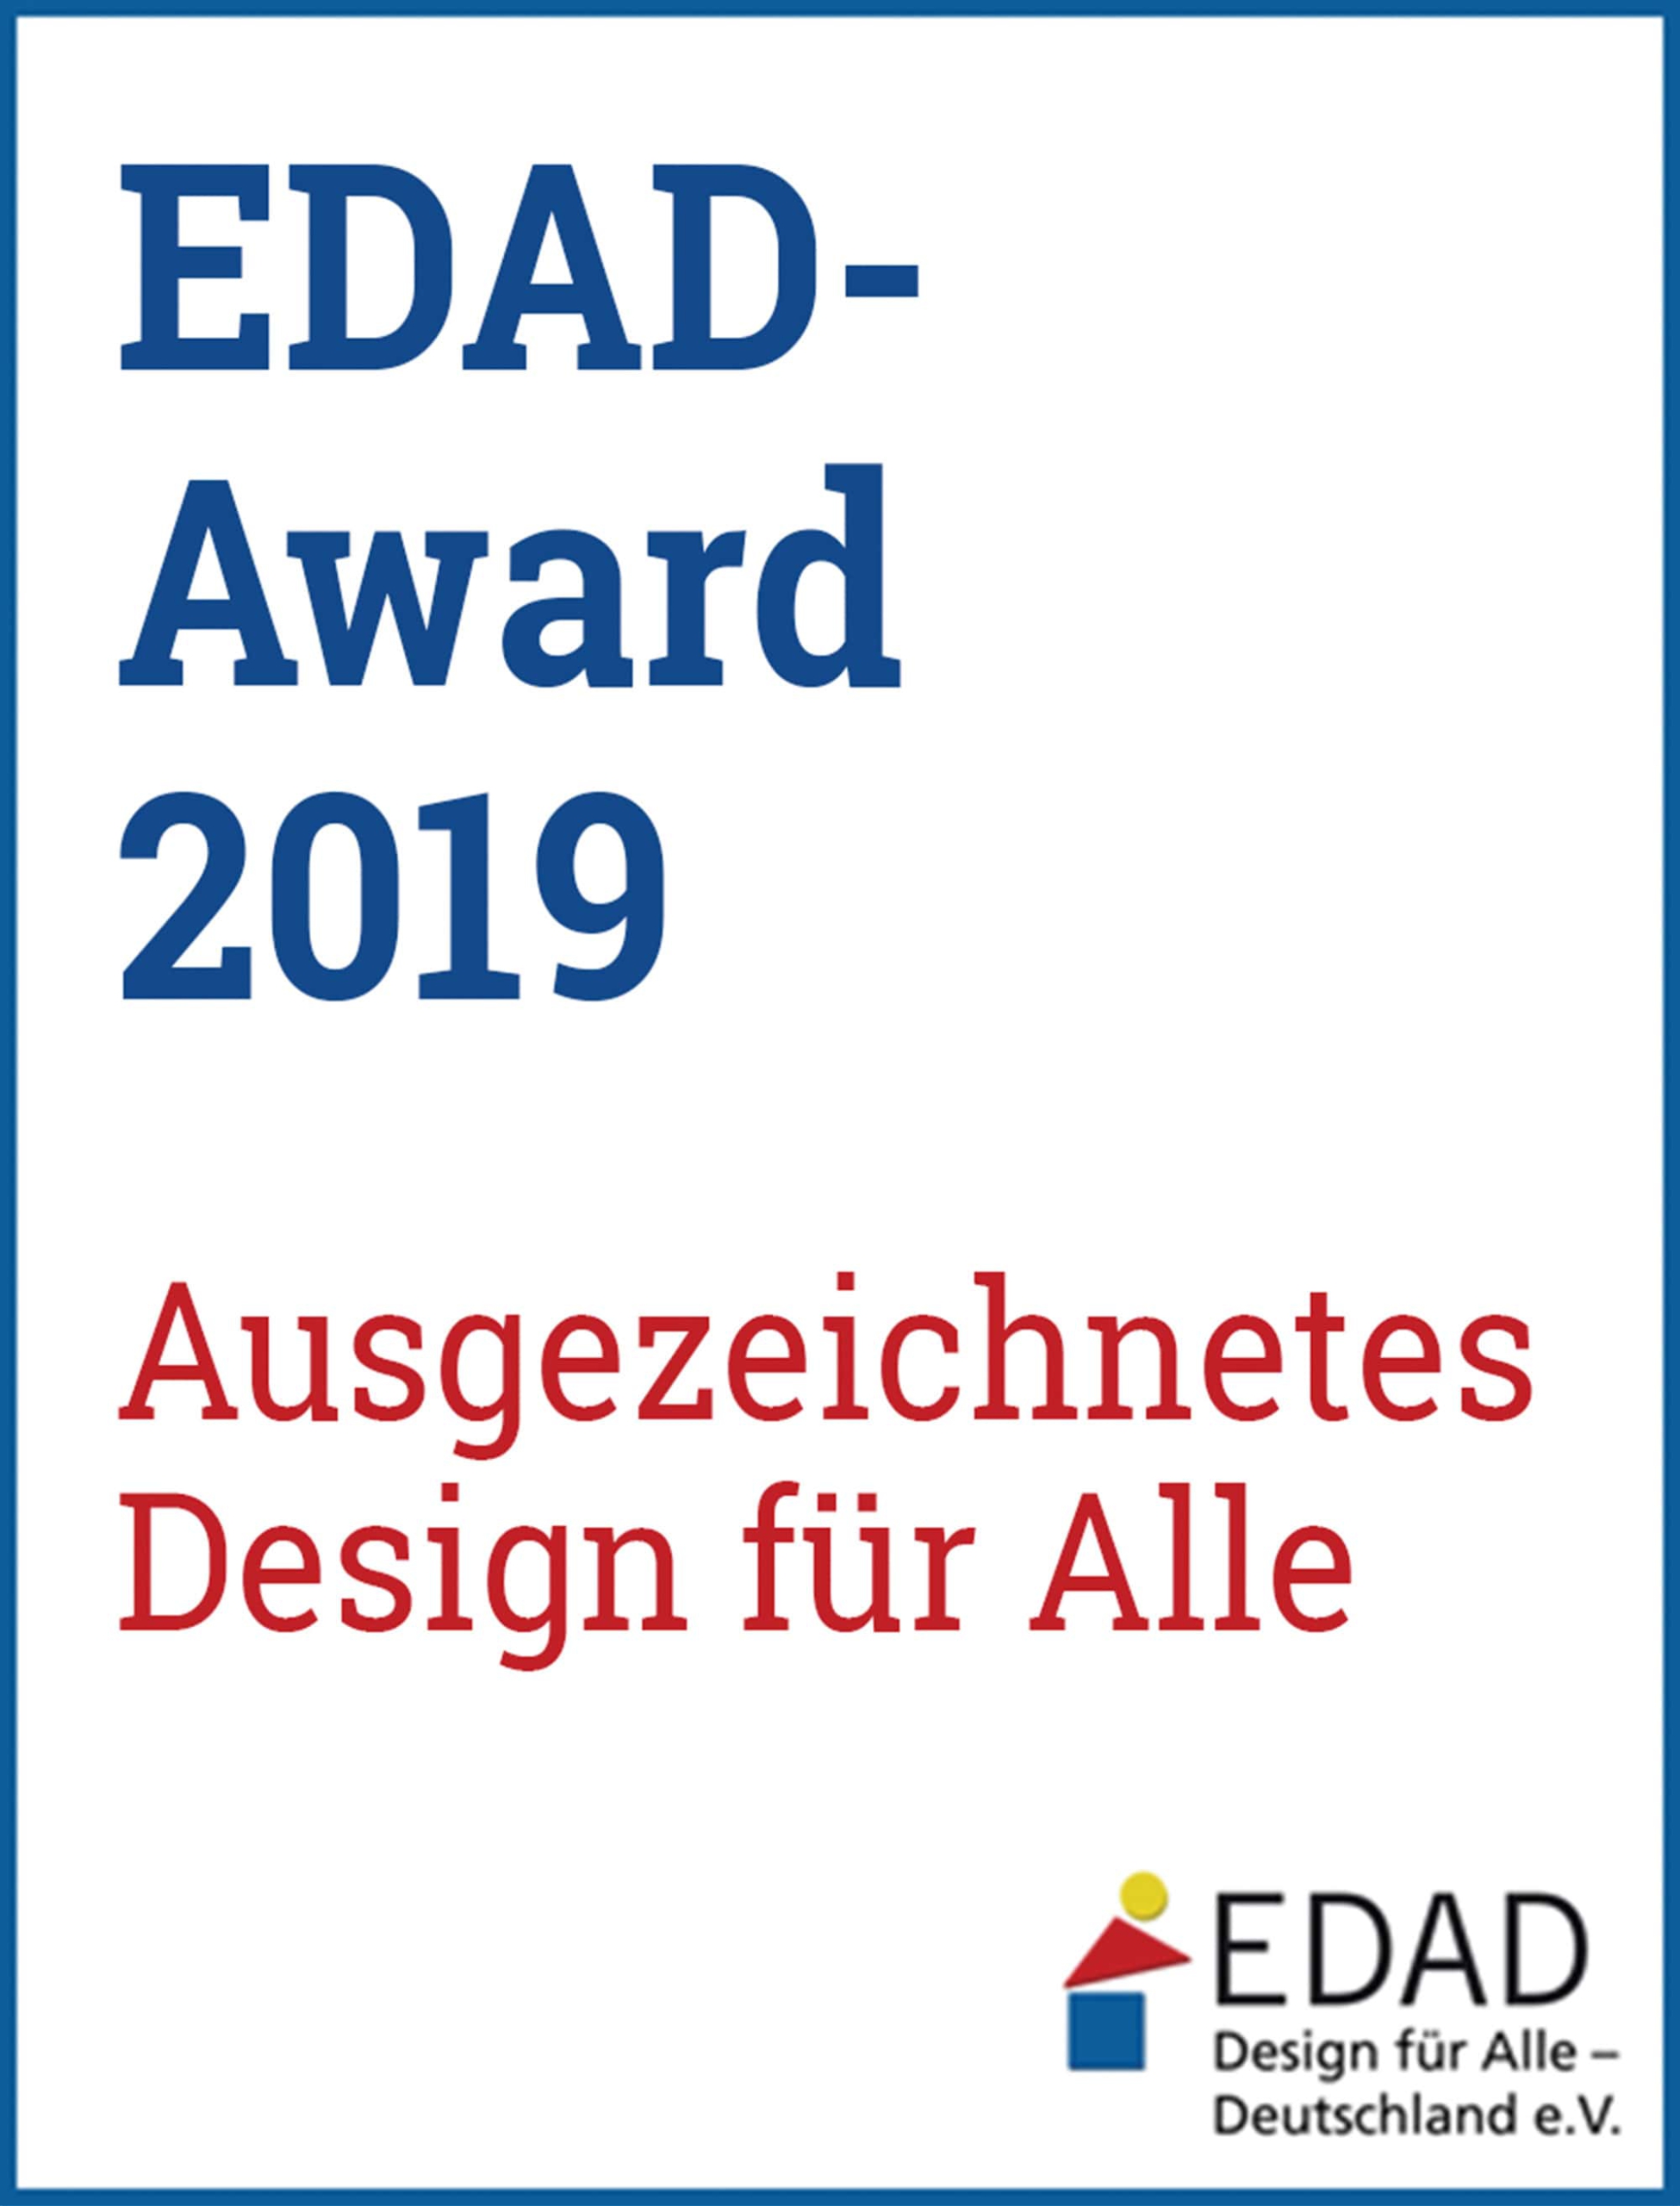 Logo: EDAD - Award 2019 Ausgezeichnetes Design für Alle